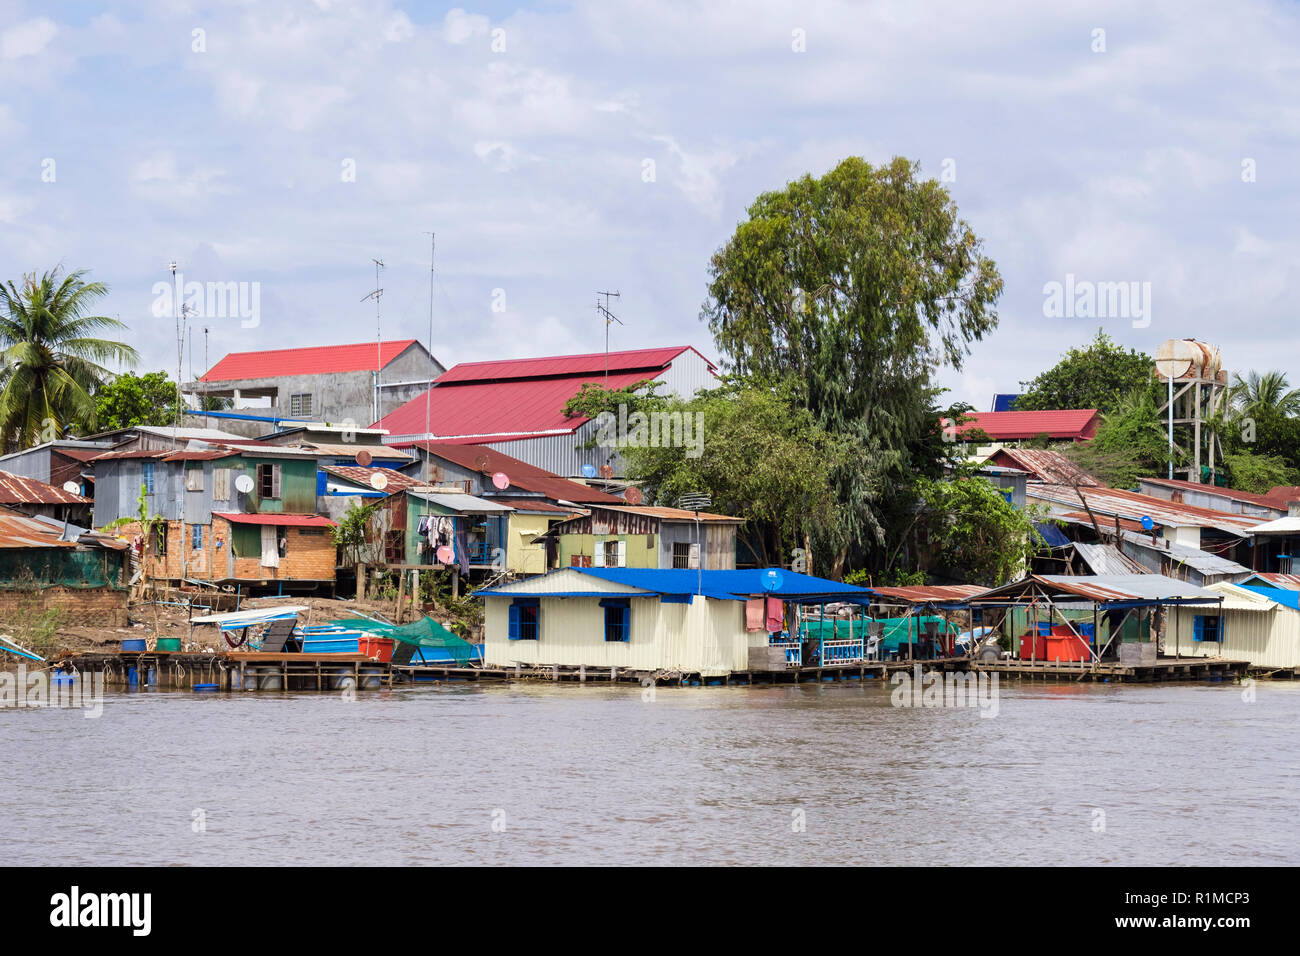 Baraccopoli tipico stagno ondulato case su palafitte nel villaggio di pescatori lungo il fiume Mekong. Cambogia, sud-est asiatico Foto Stock